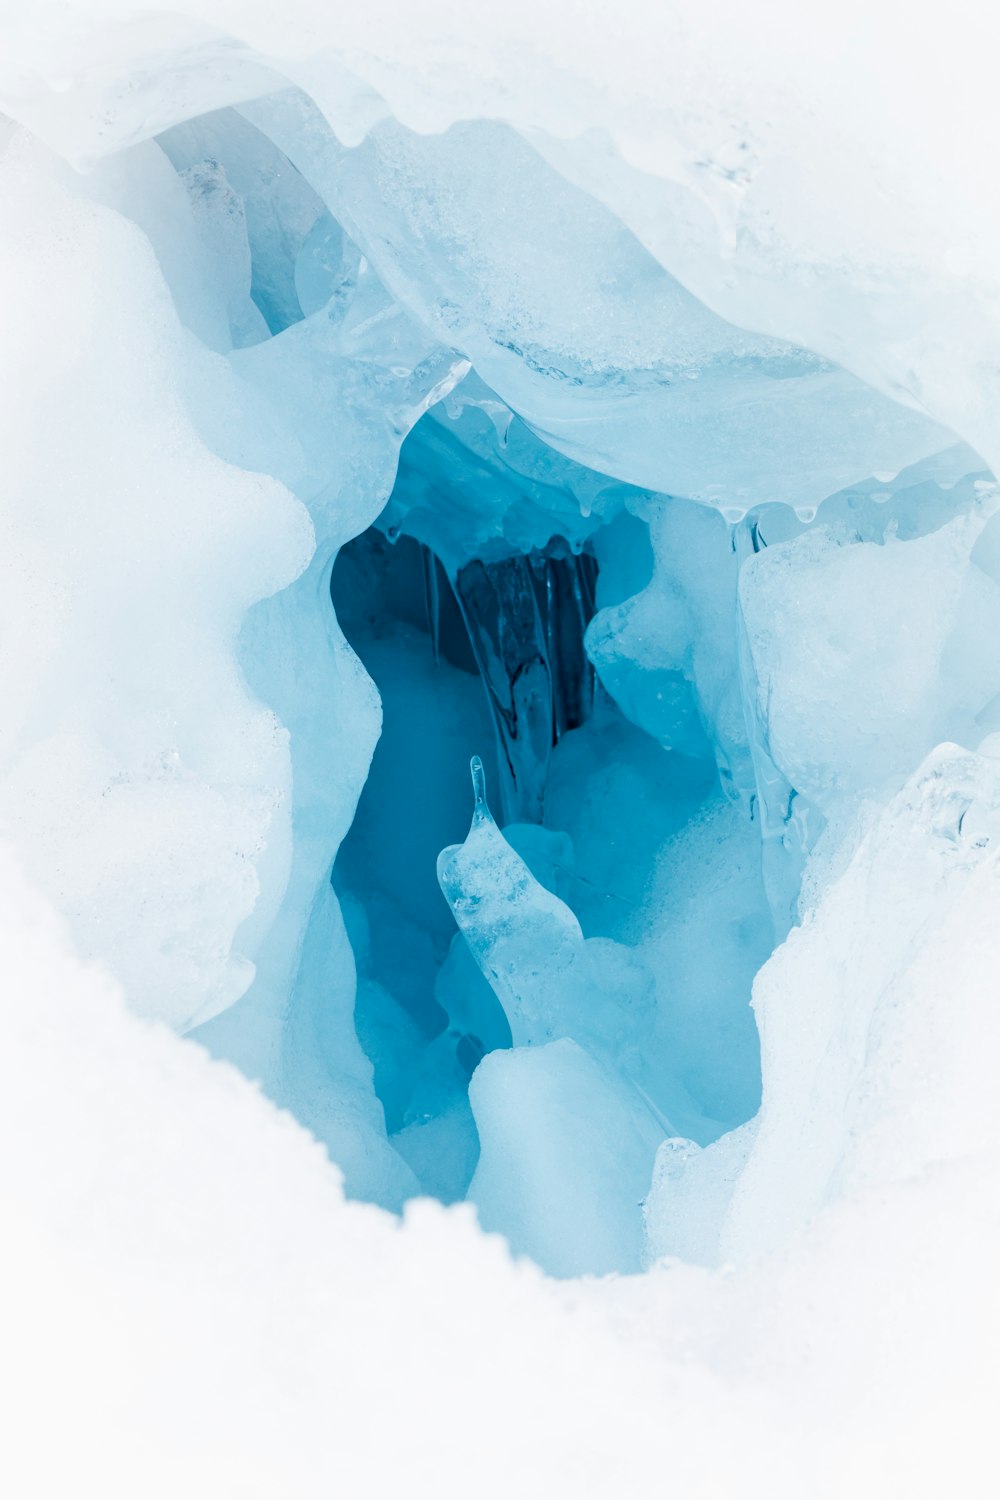 Ein Loch im Eis, das wie eine Eishöhle aussieht